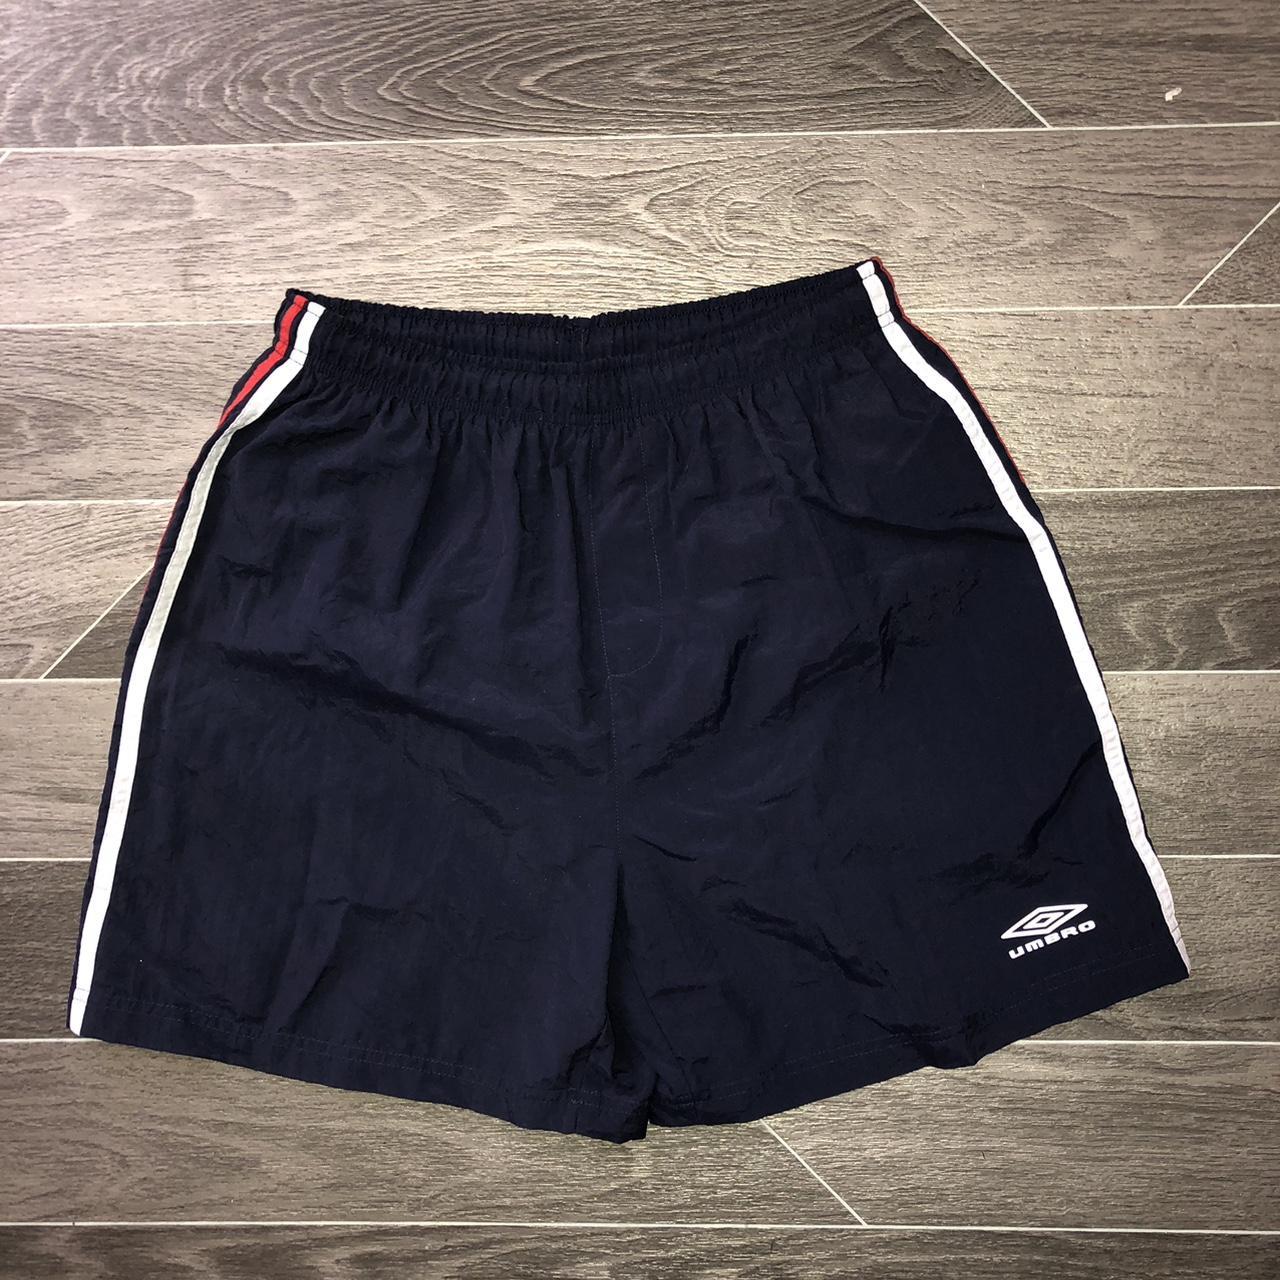 Umbro Men's Navy Shorts | Depop